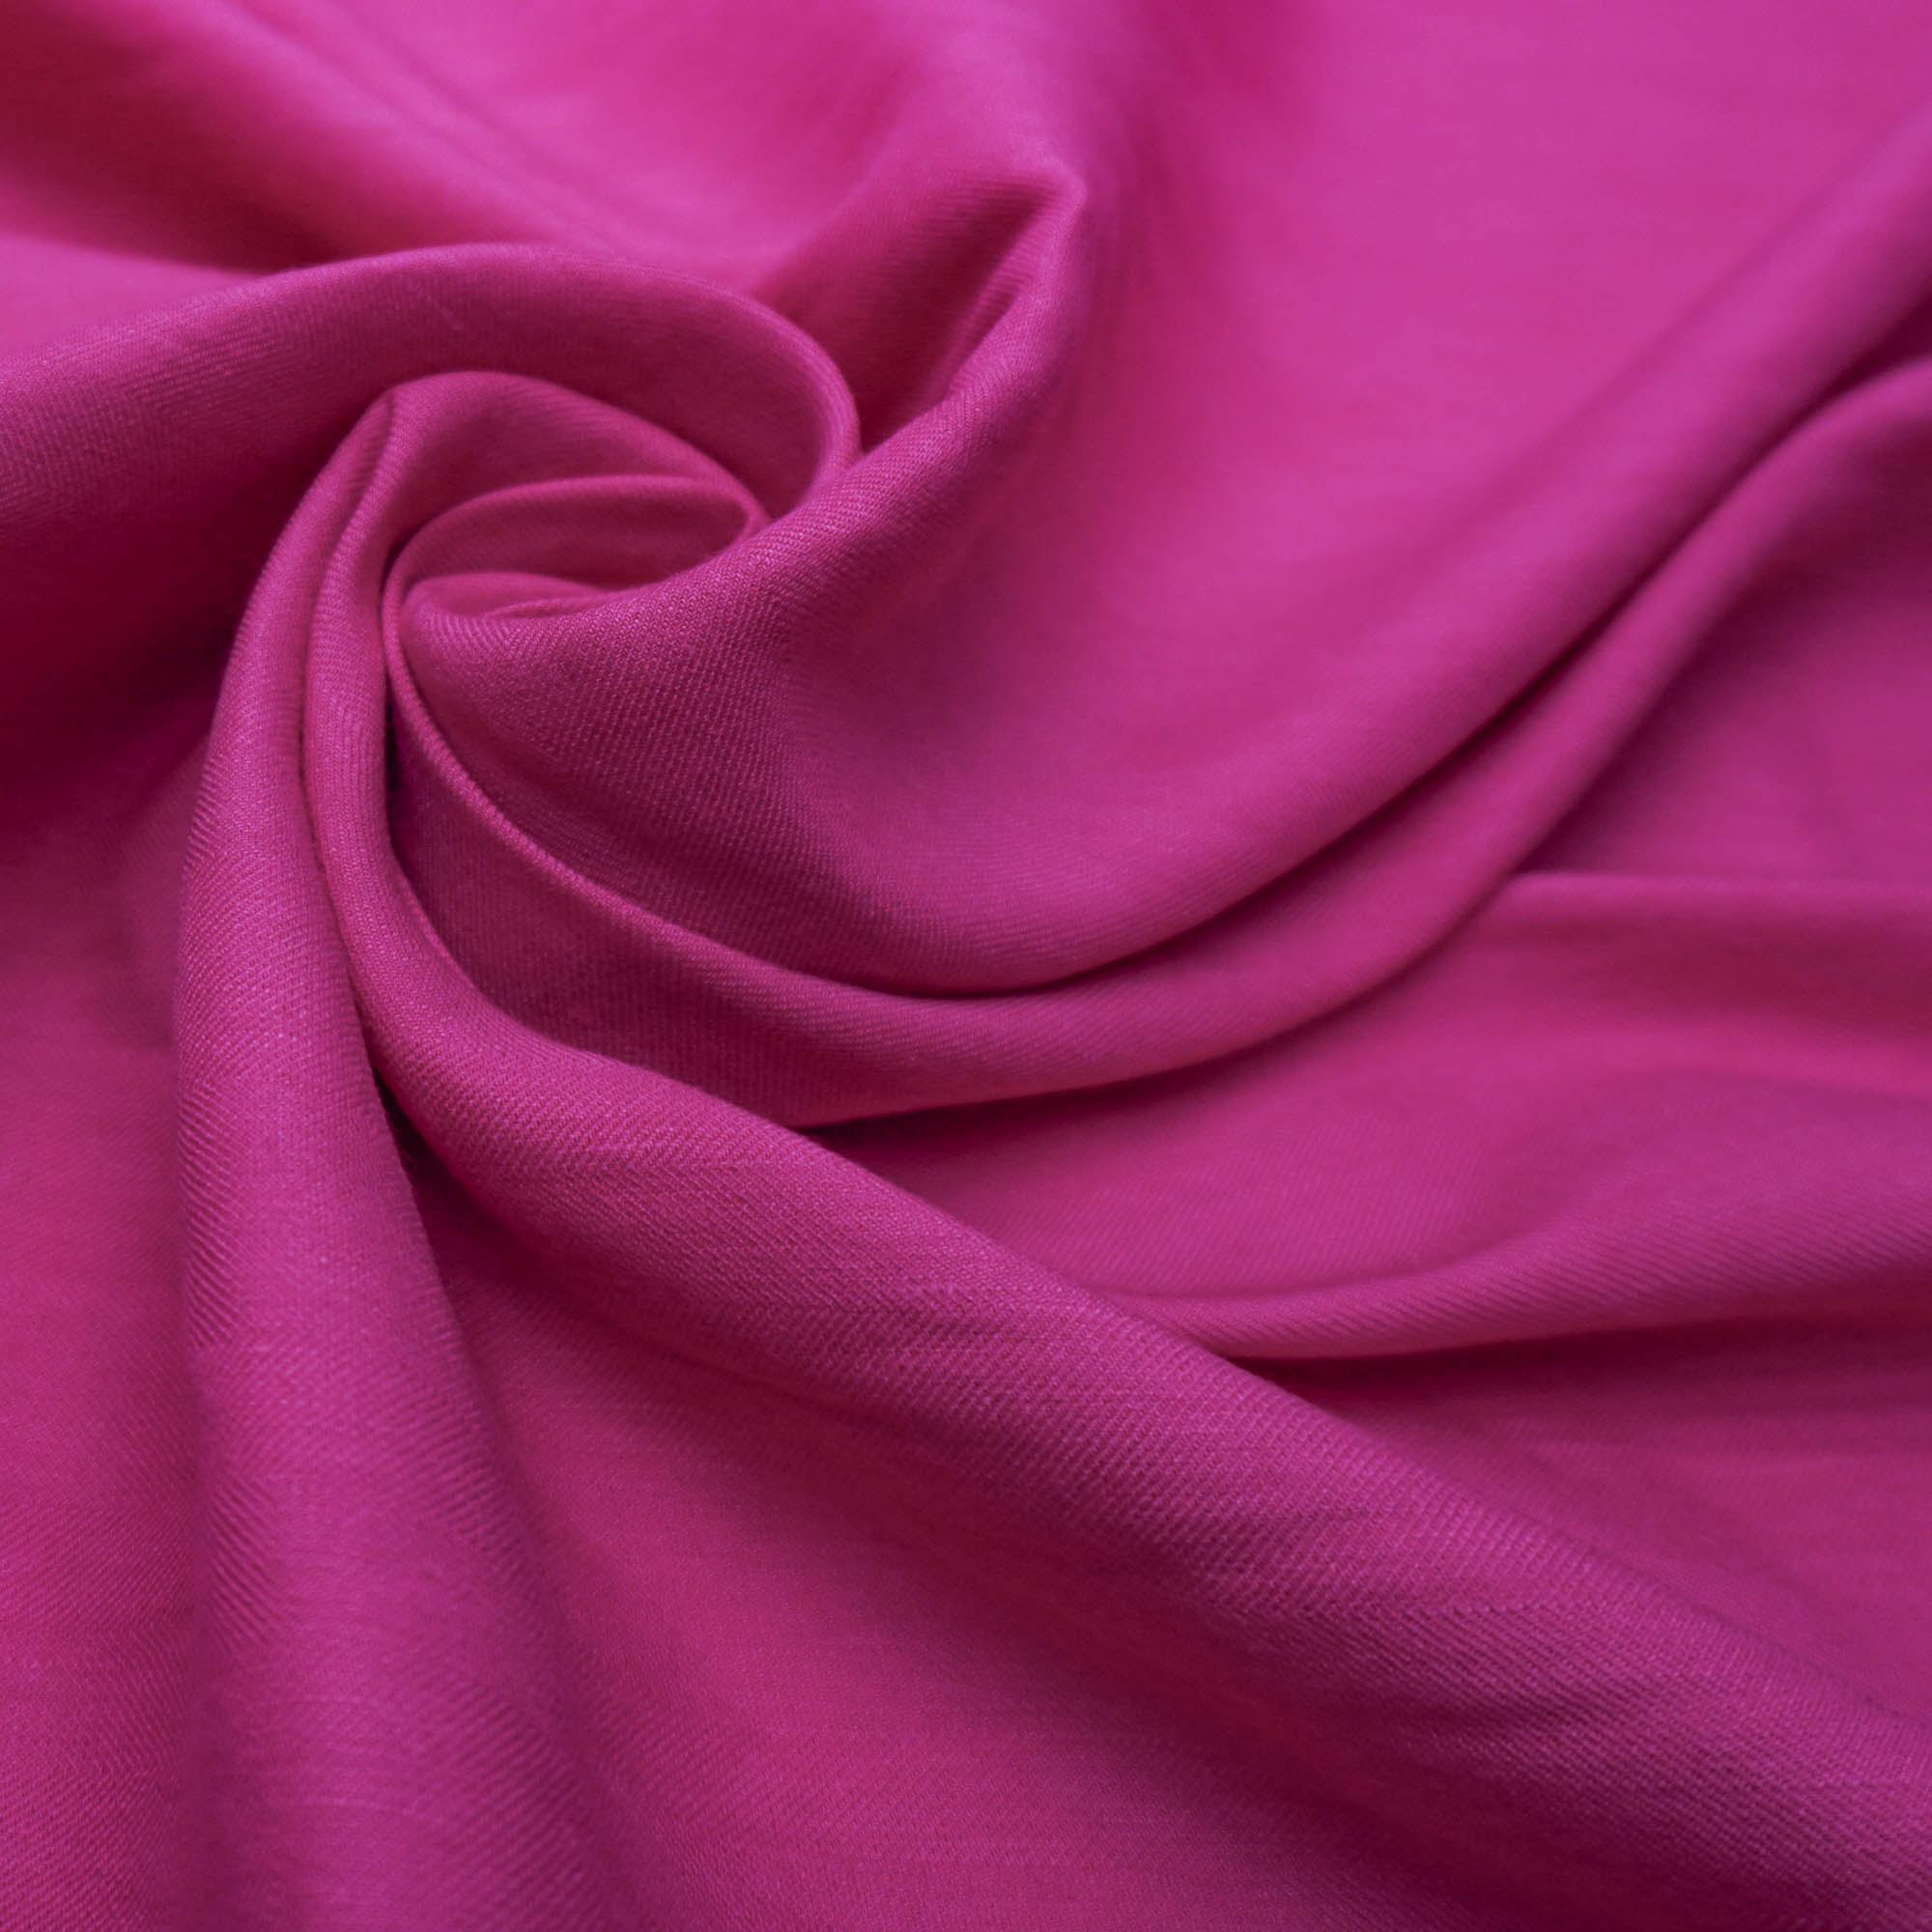 Tecido linho misto com elastano pink (tecido italiano legítimo)